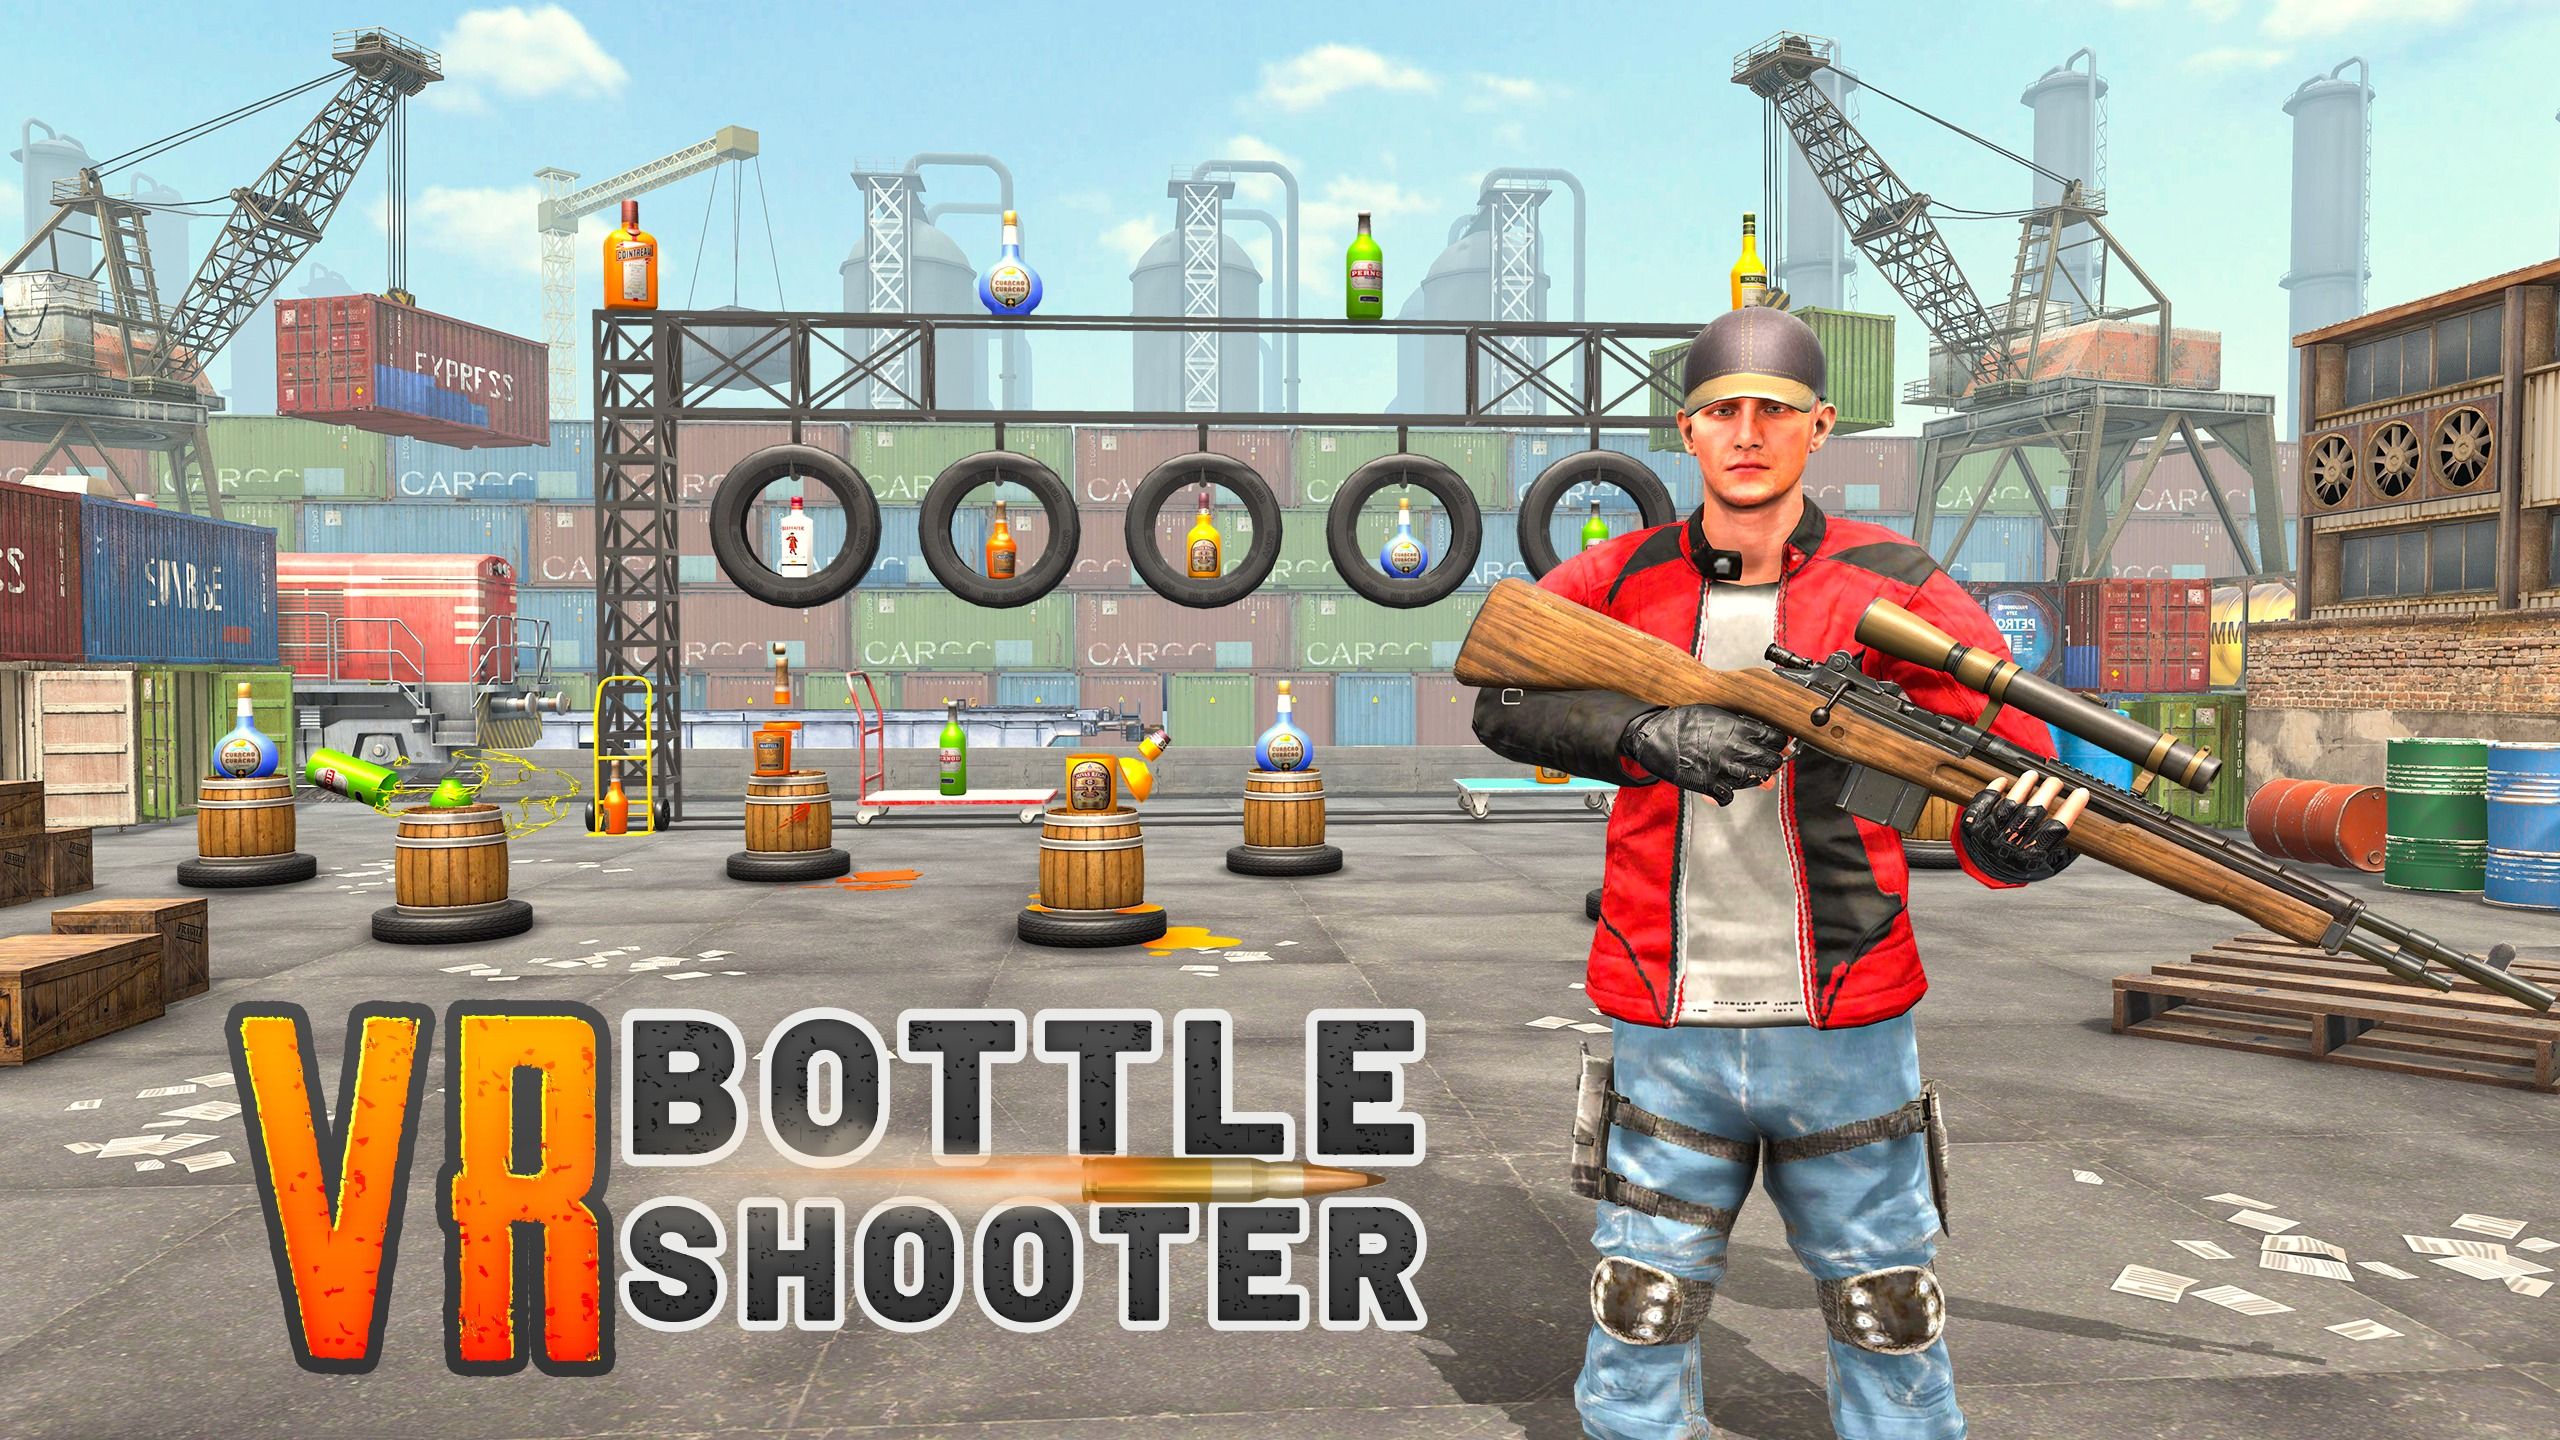 VR Bottle Shooter Quest App Lab Game